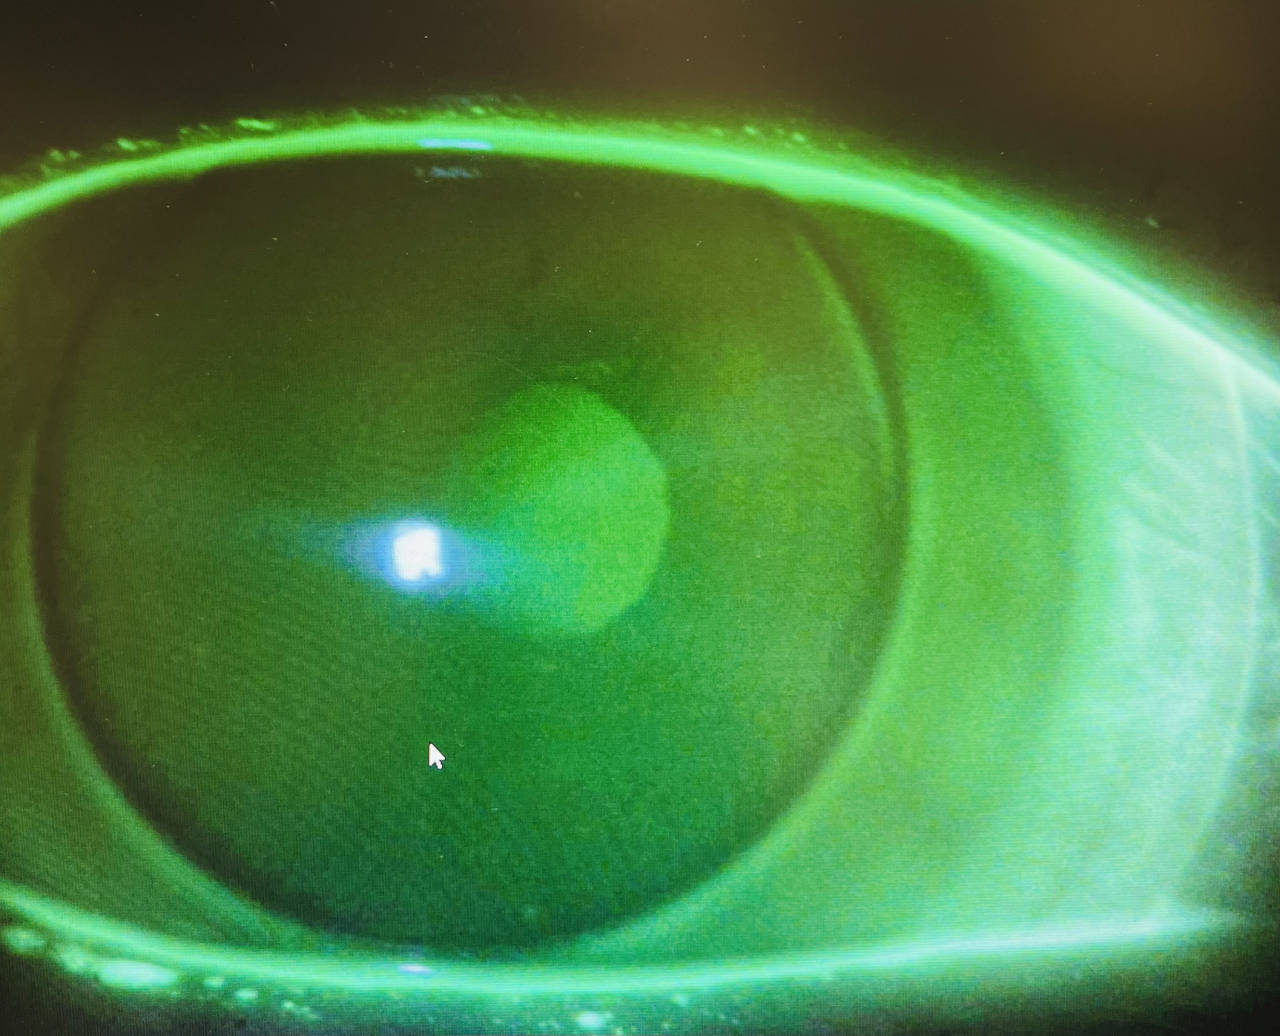 Scleral lens test